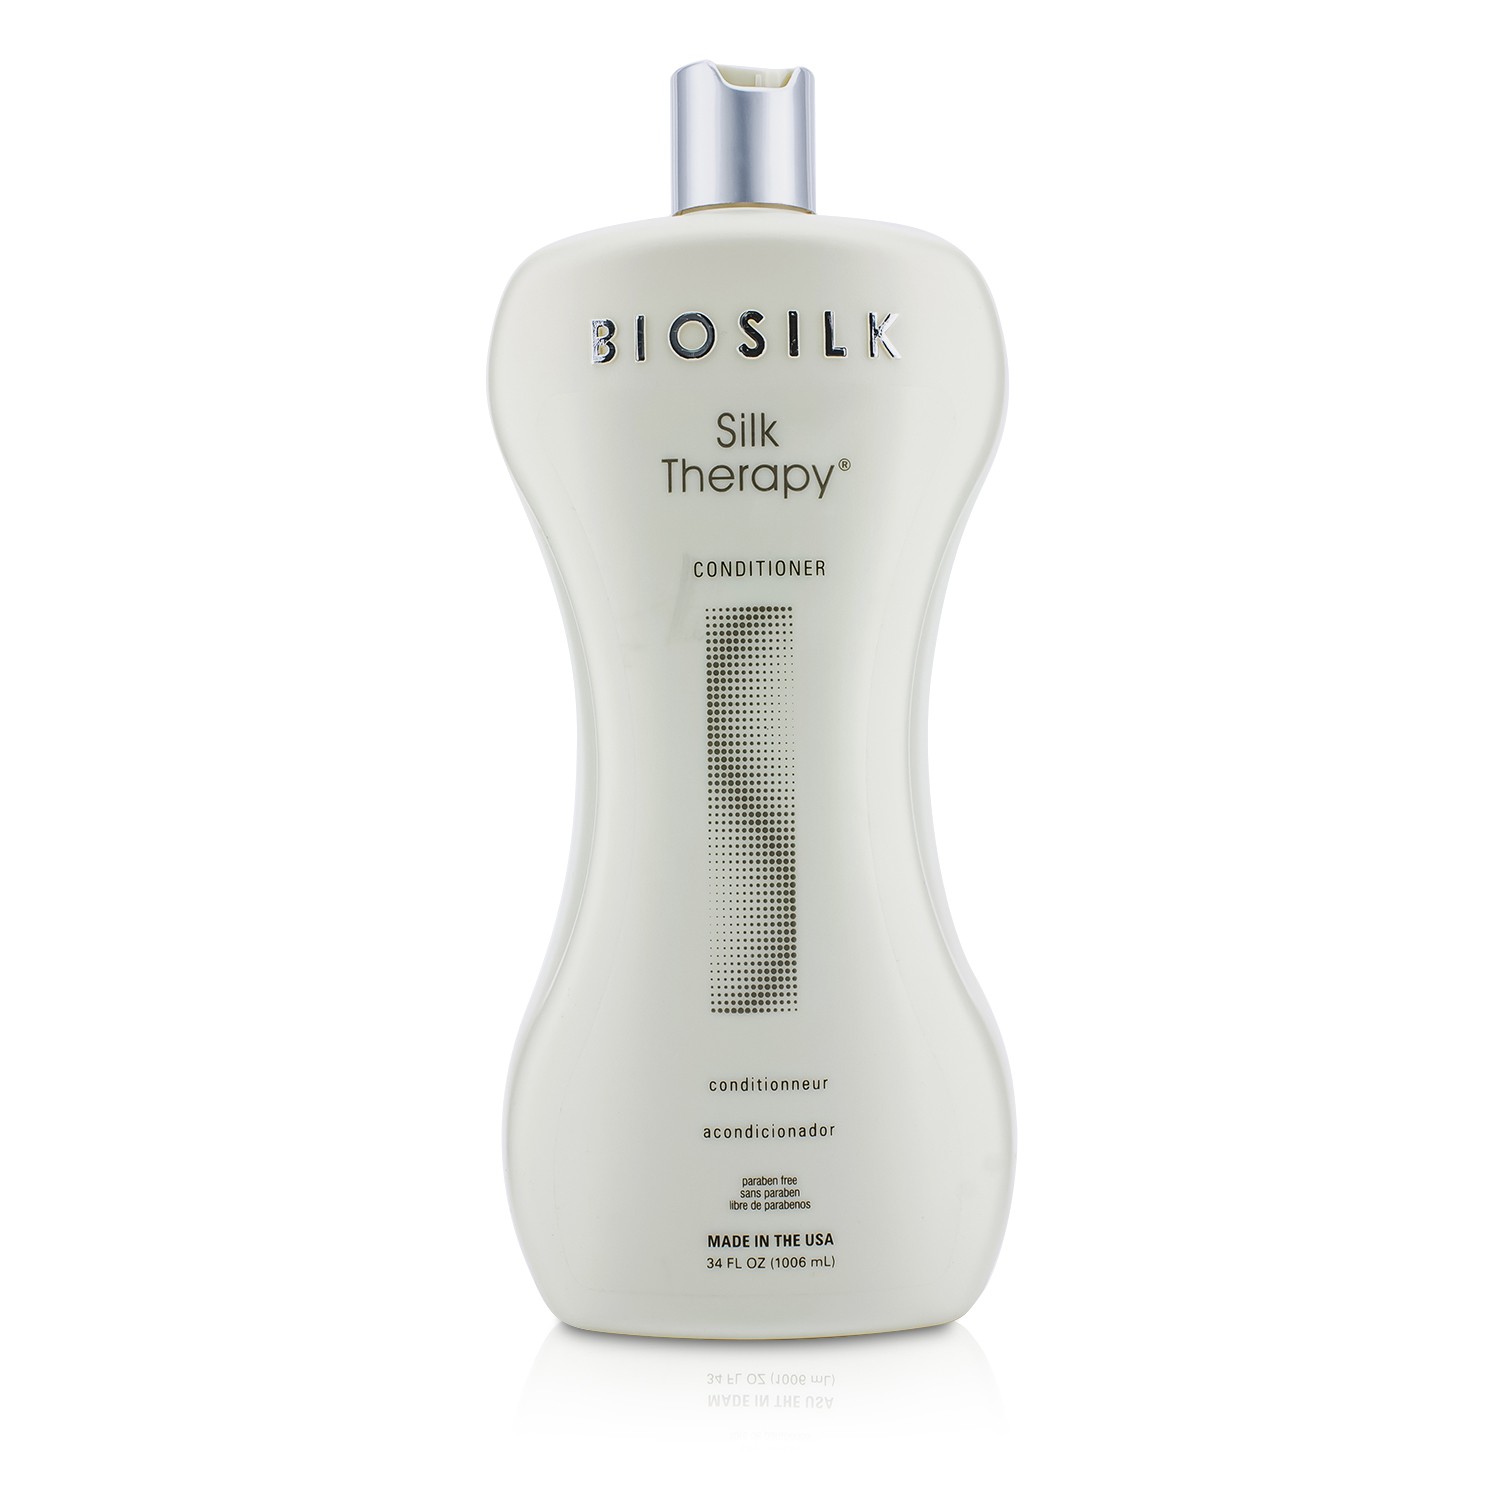 絲洛比 BioSilk - 蠶絲護理護髮素 Silk Therapy Conditioner